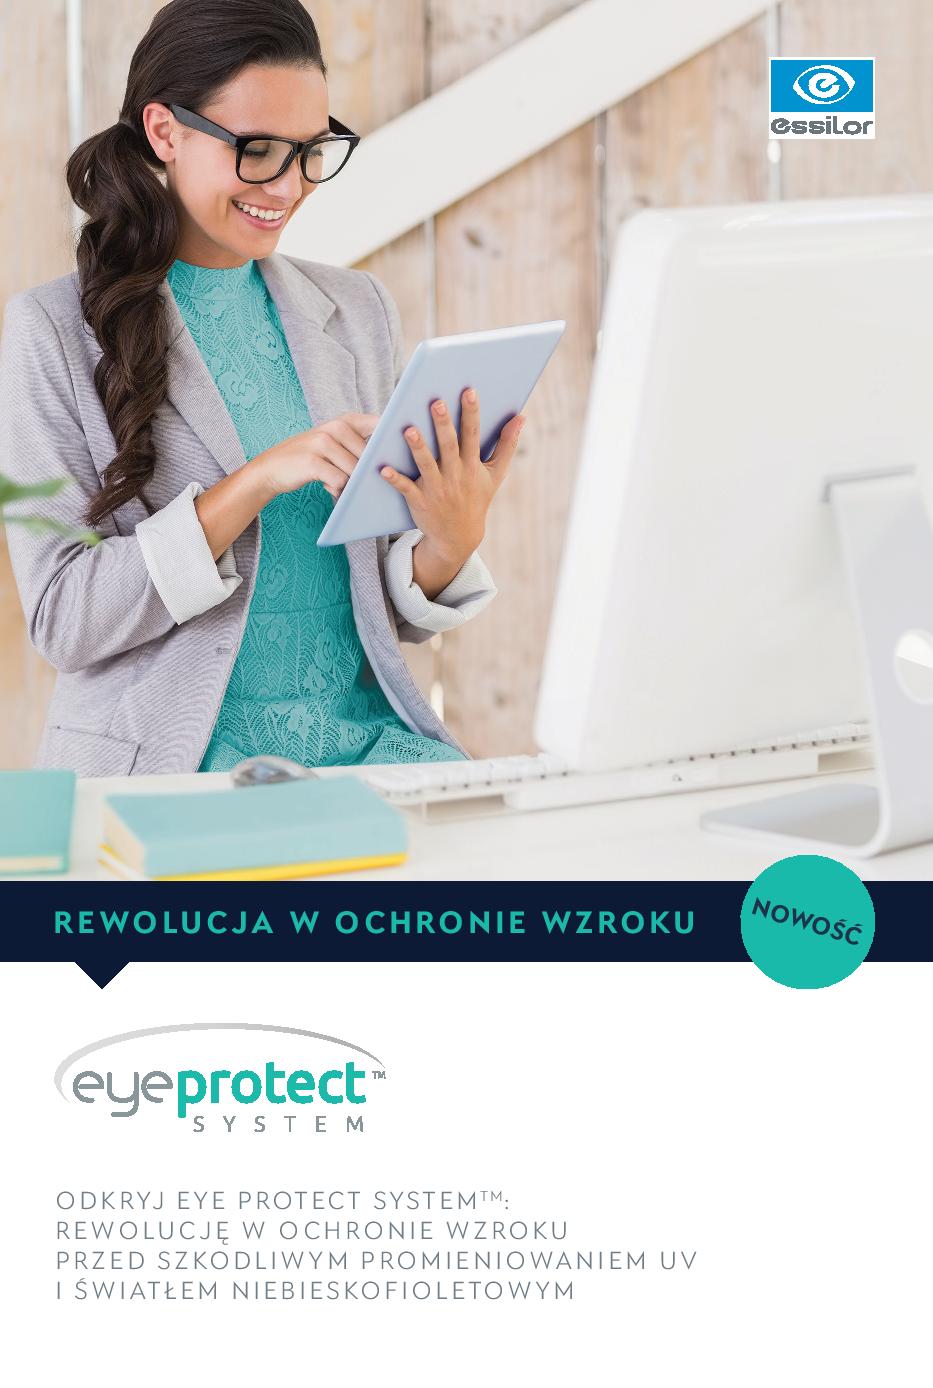 Eye Protect System - Ochrona wzroku z Essilor w Optique